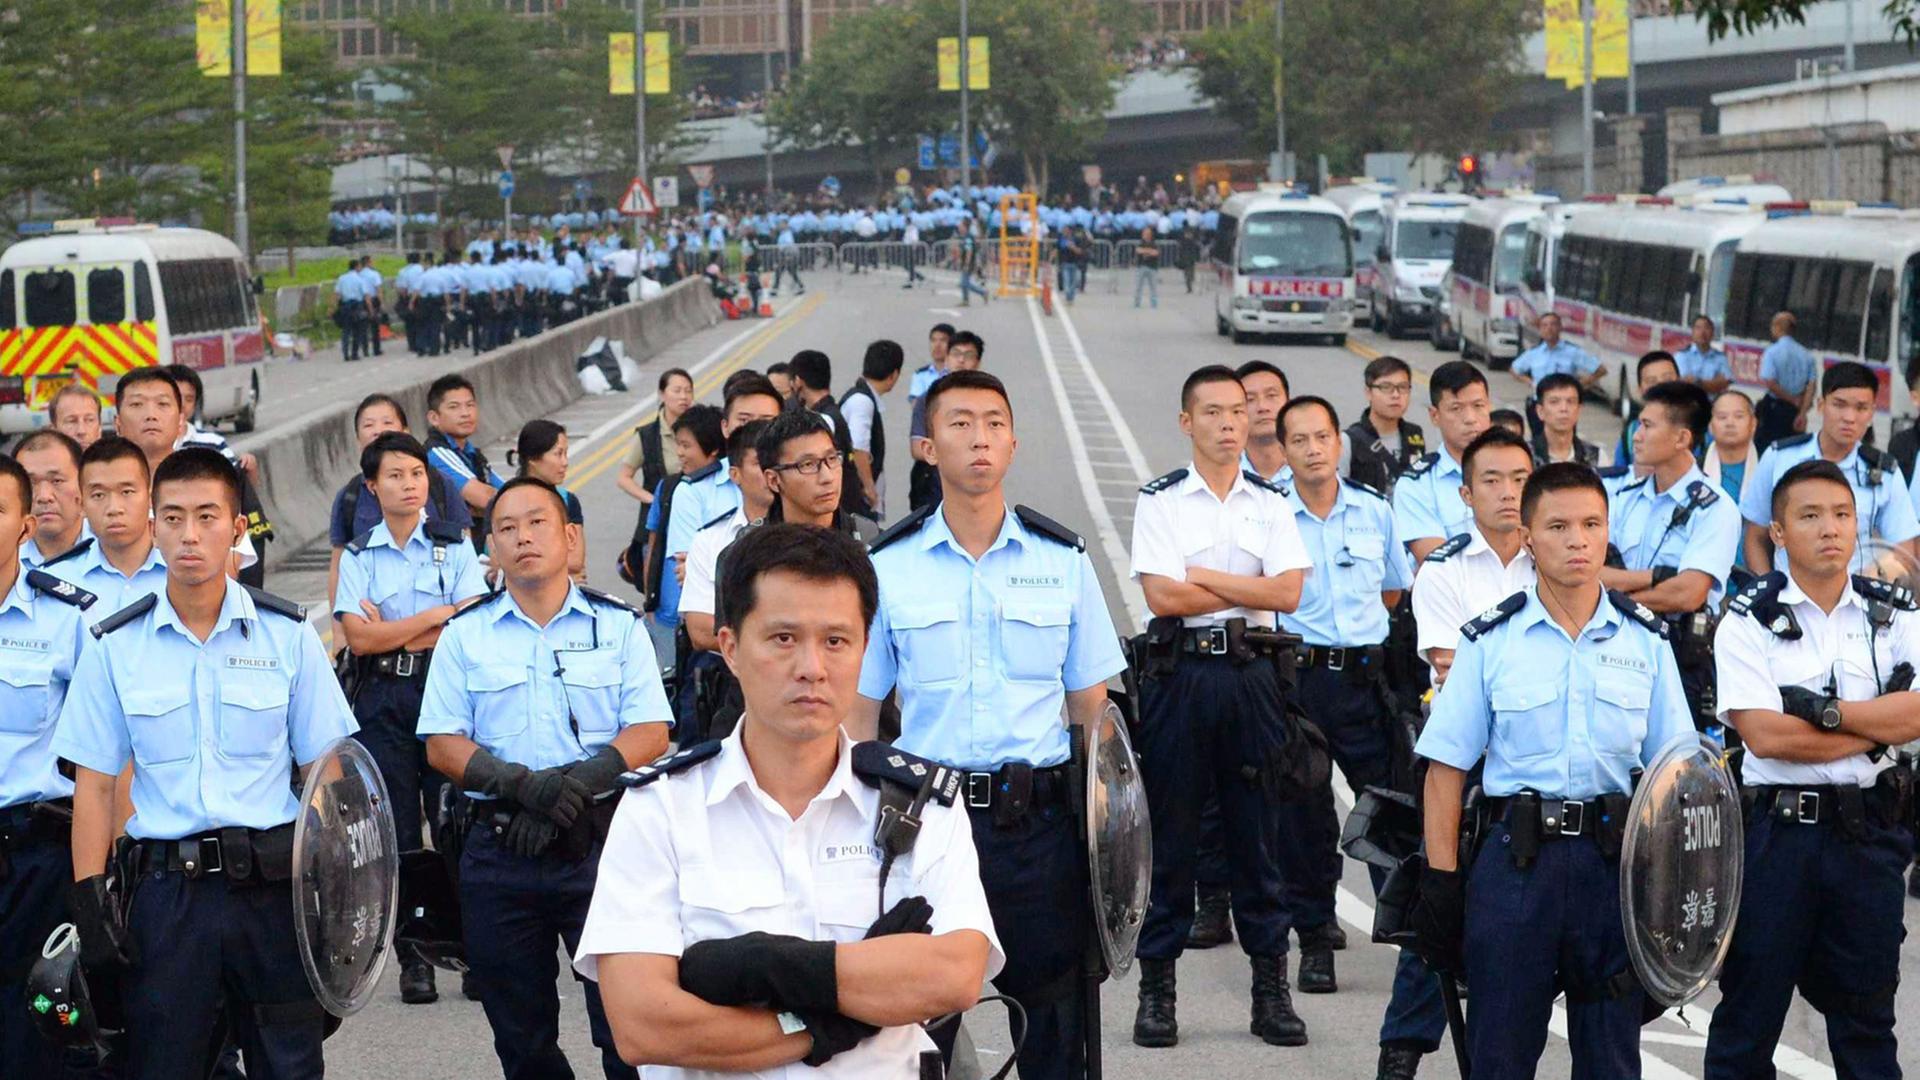 Auf einer Straße haben sich in mehreren Reihen Polizisten aufgestellt.